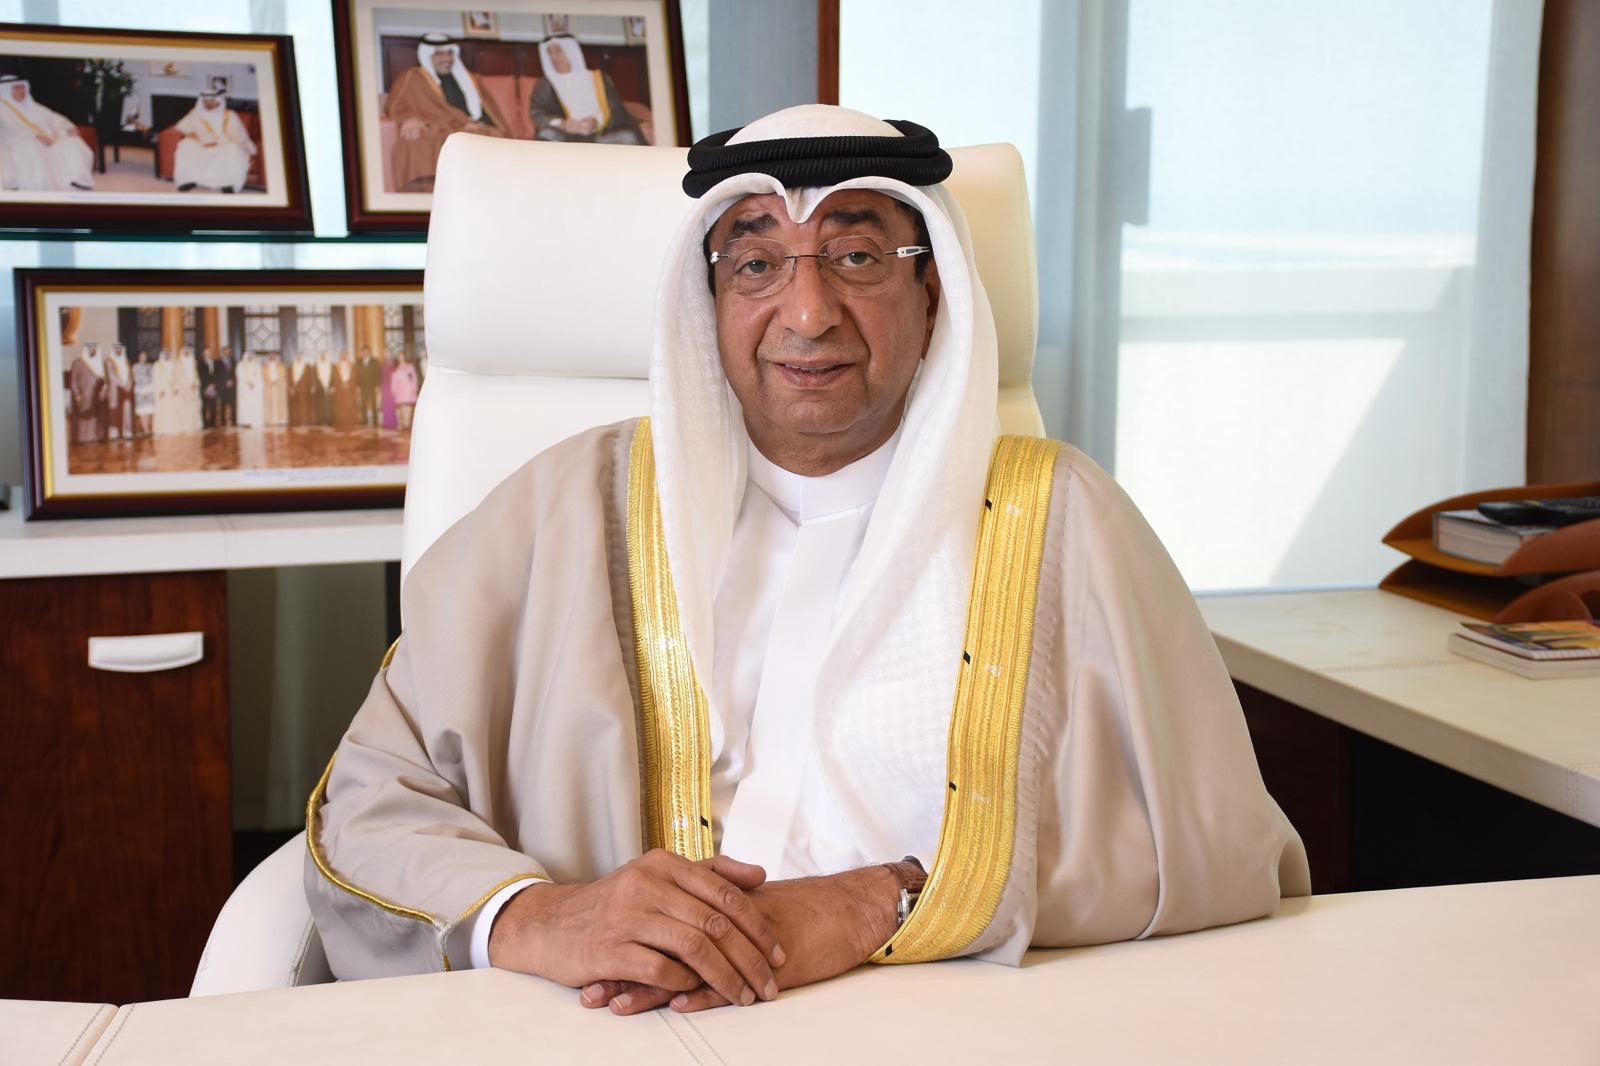 سمير بن عبد الله ناس، رئيس مجلس إدارة اتحاد غرف مجلس التعاون الخليجي ورئيس غرفة تجارة وصناعة البحرين